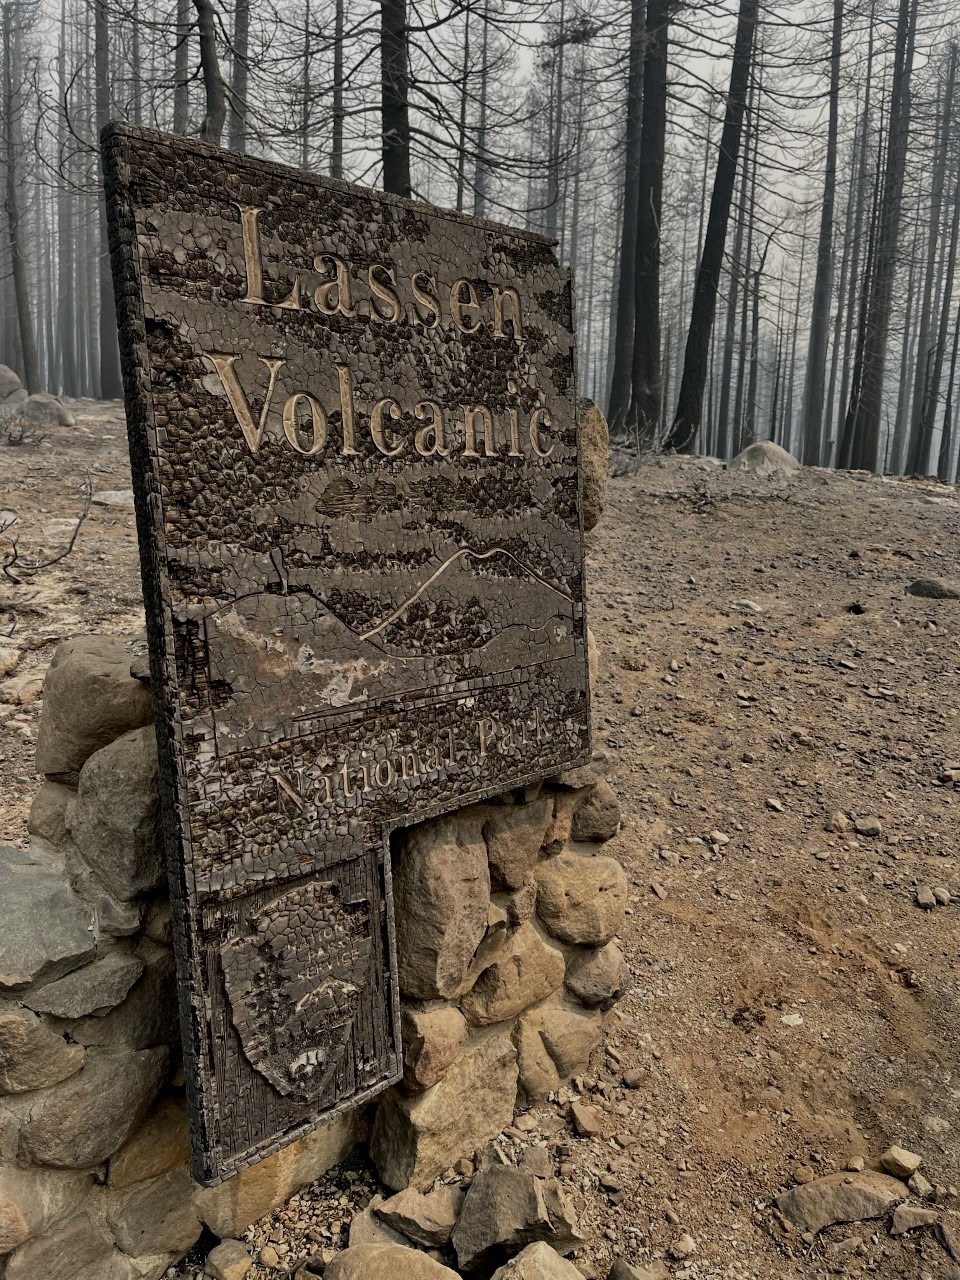 Casi el 70% del Parque Nacional Volcánico Lassen quemado por Fire Wildfire - 13